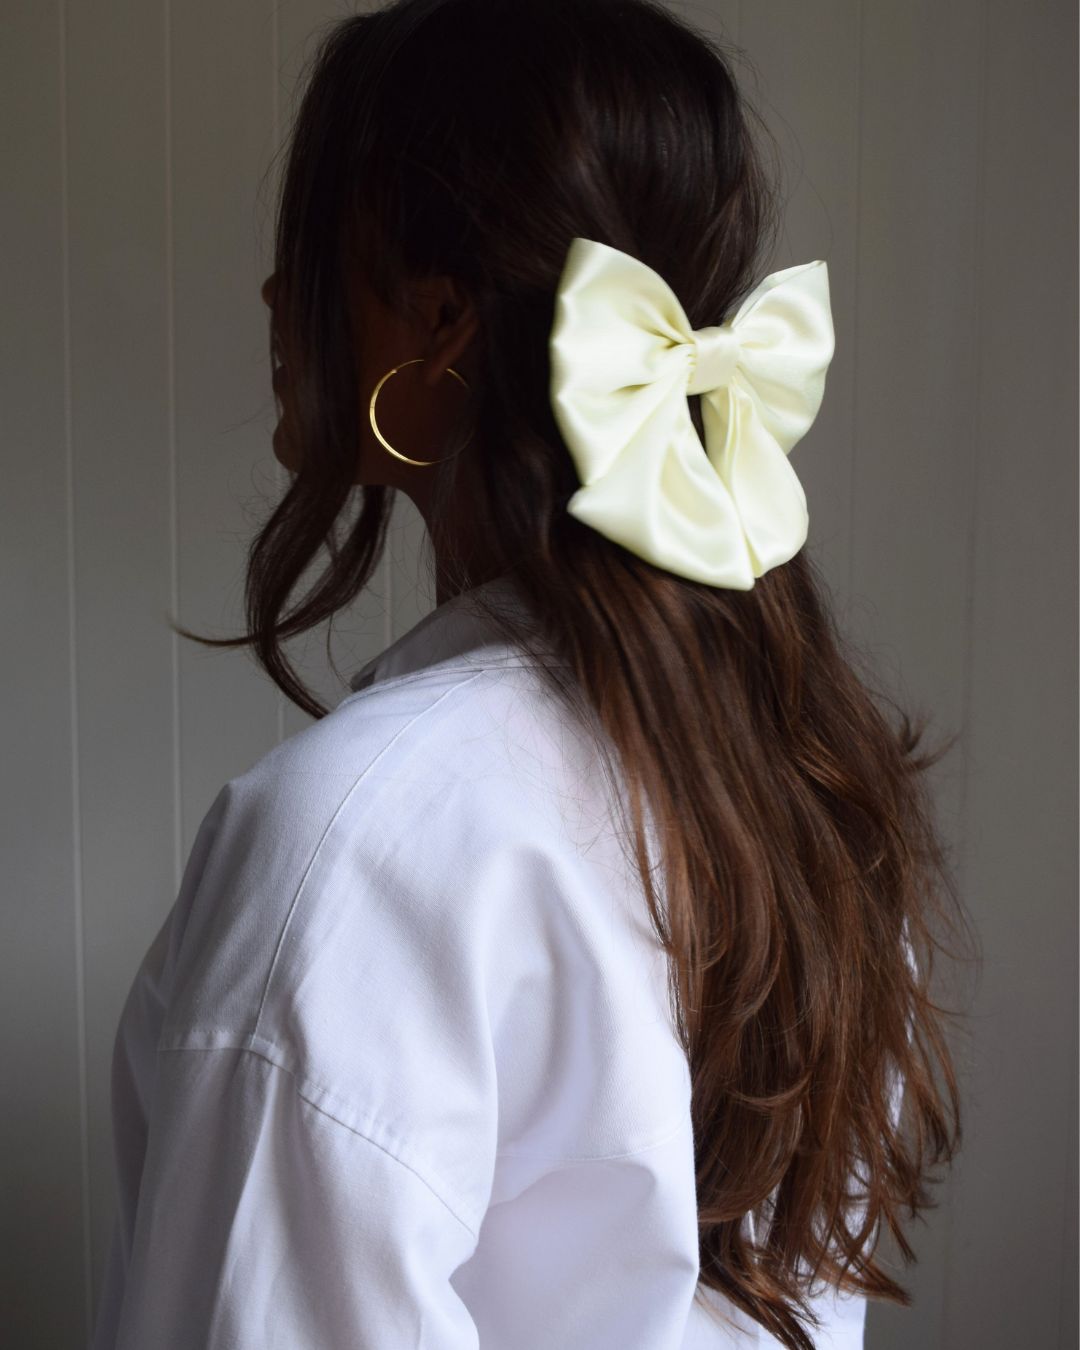 Hair bow - Buttermilk (light yellow)